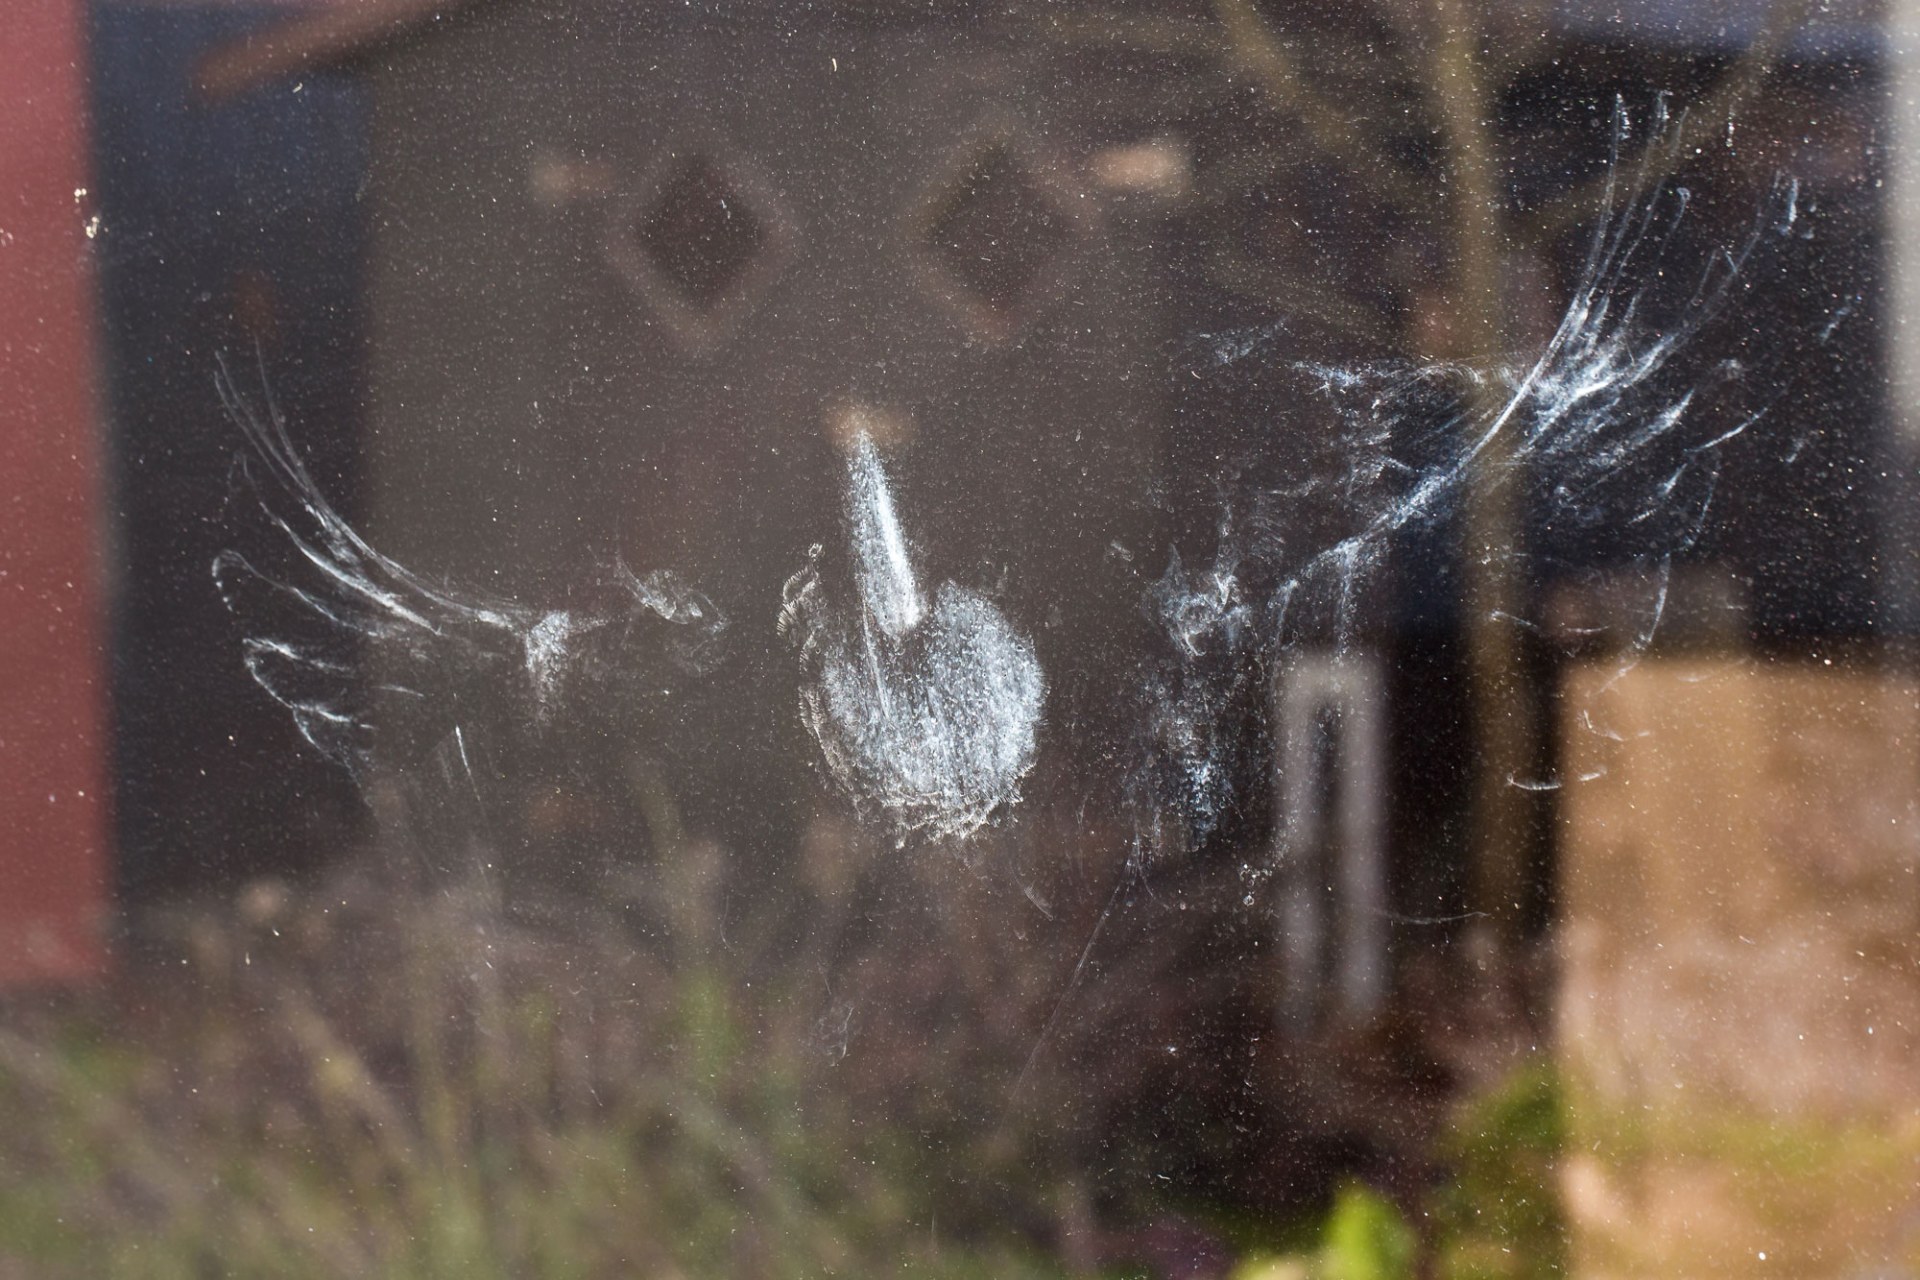 Ein Abdruck eines Vogels an einer Fensterscheibe, der wohl gegen die Scheibe geflogen ist | © Ralph Sturm